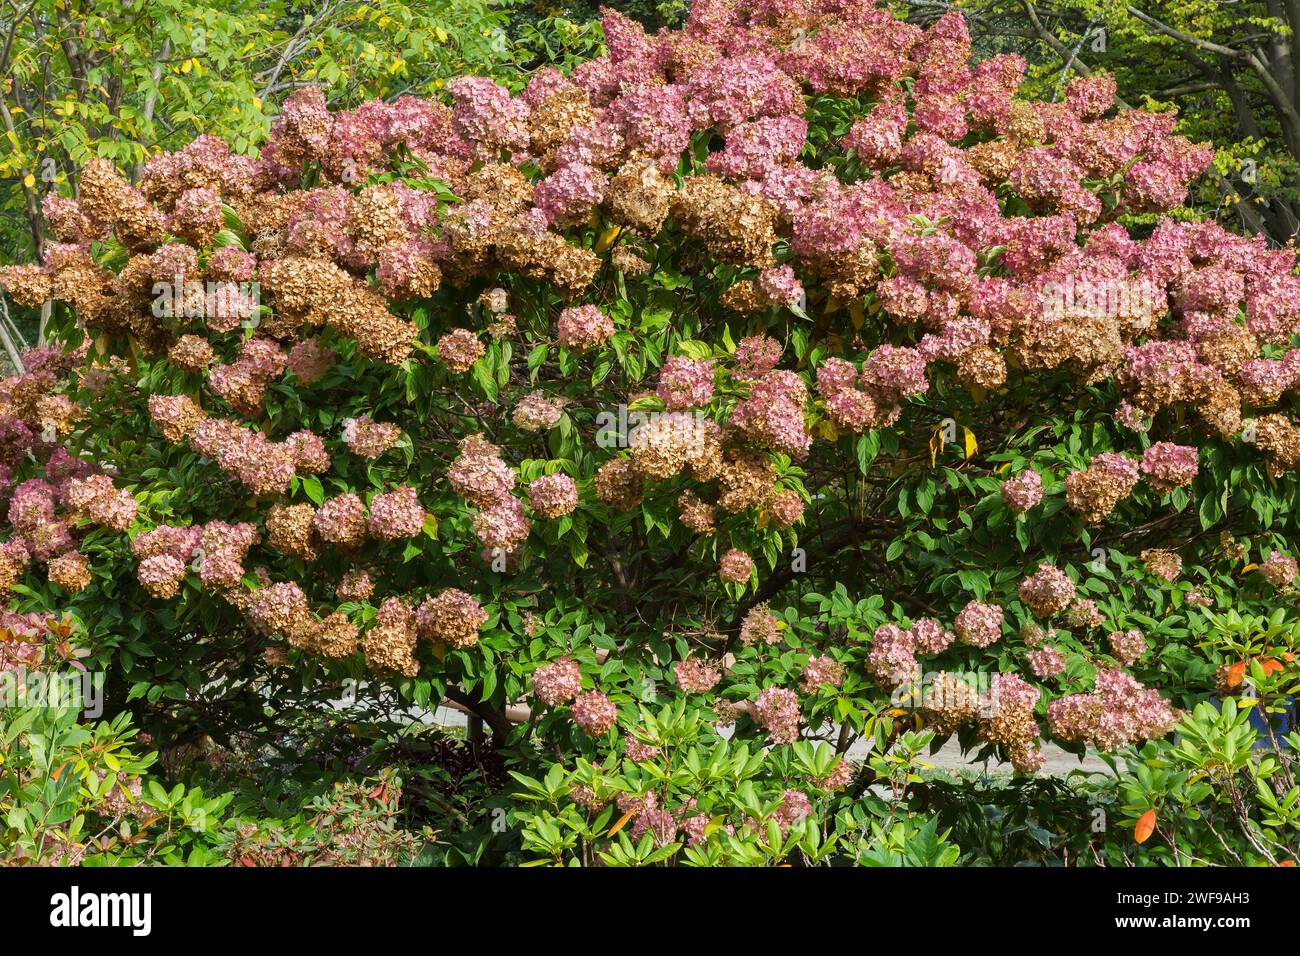 Hortensie paniculata 'Grandiflora' - PeeGee Hortensie mit rosa und welkigen Blütenköpfen im Herbst. Stockfoto